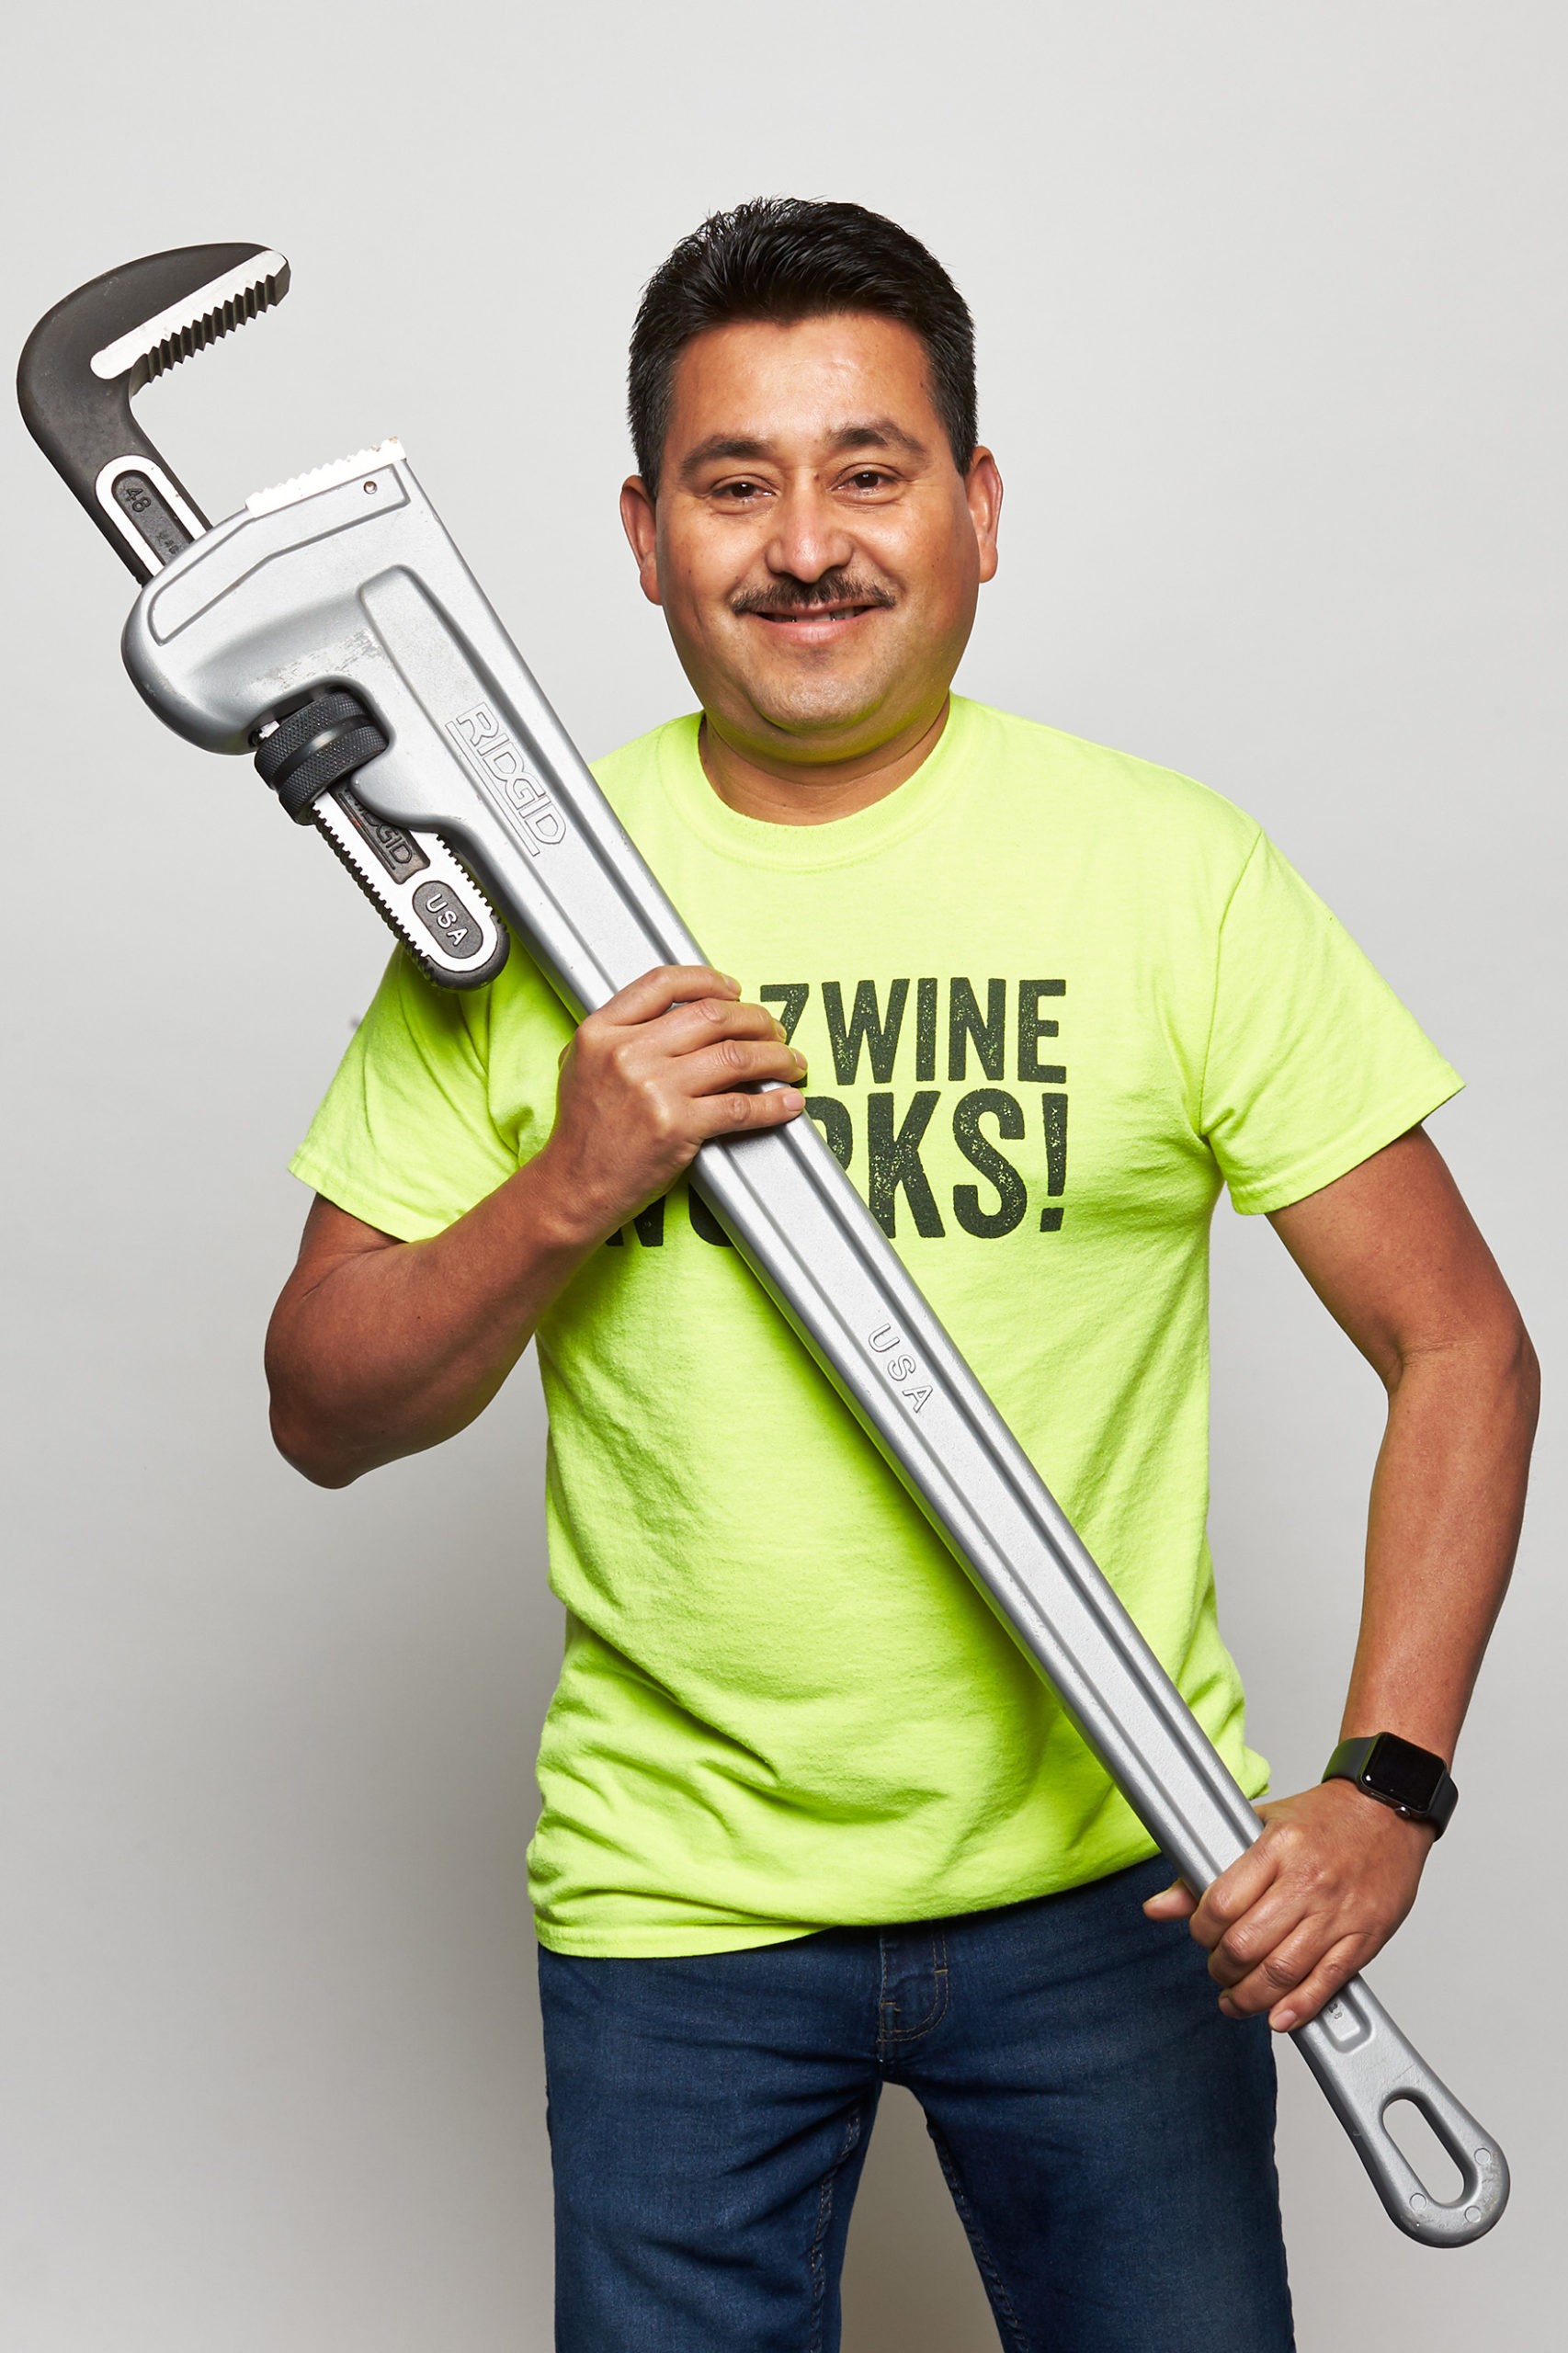 Aurelio holding large wrench WAAZ